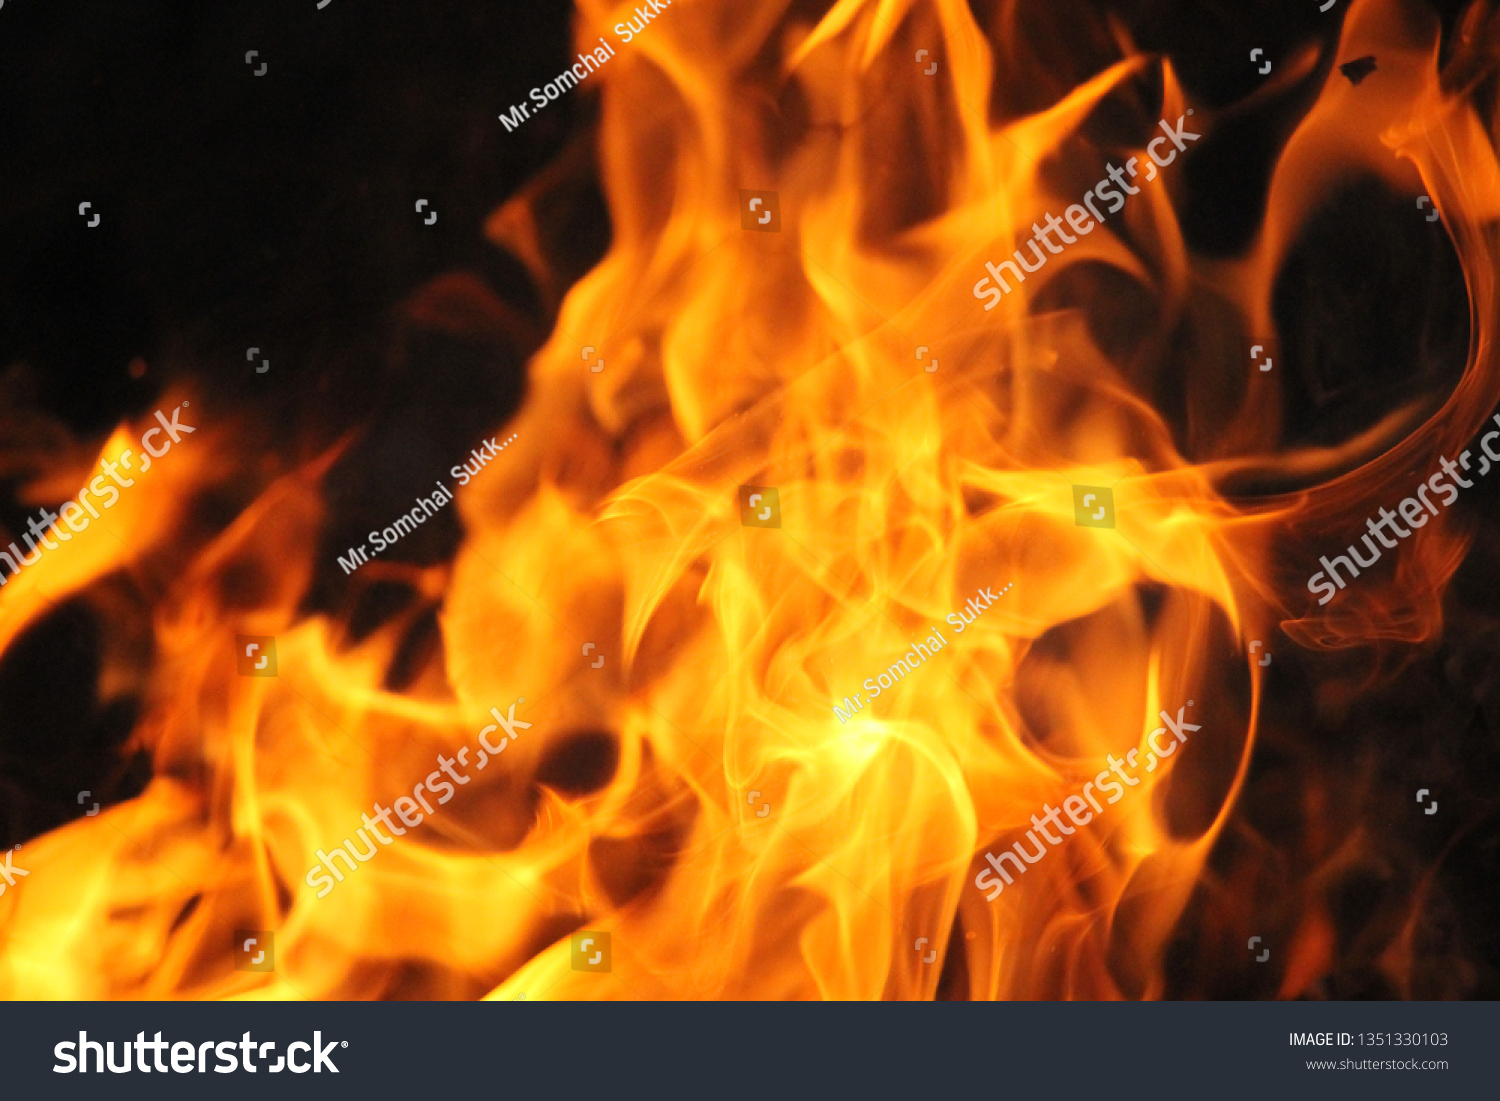 Blurrd Blaze fire flame texture background. #1351330103